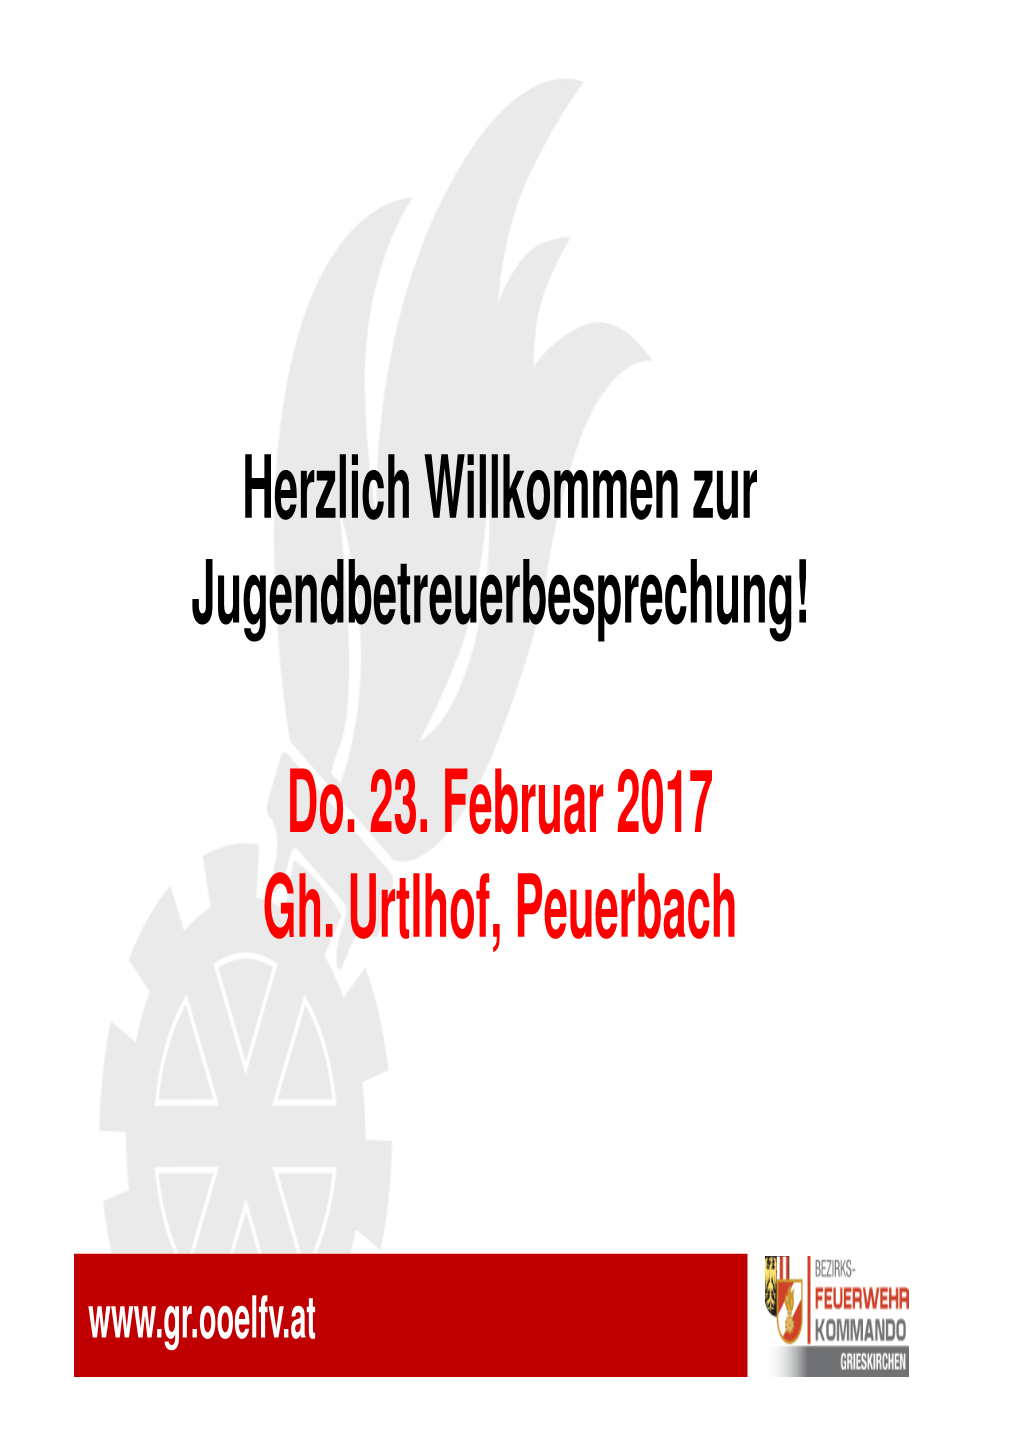 Do. 23. Februar 2017 Gh. Urtlhof, Peuerbach